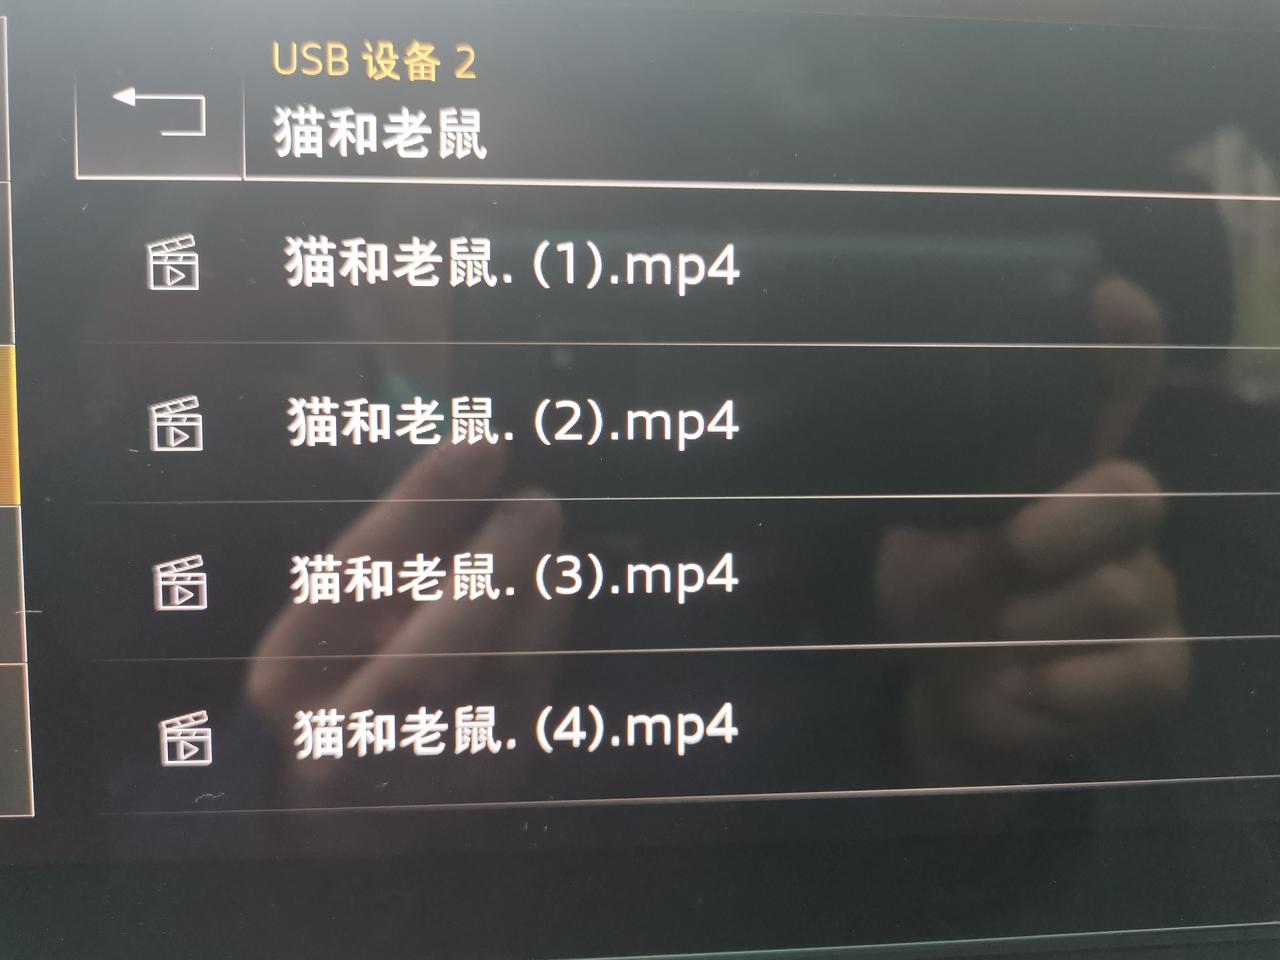 奥迪A4L 2020款40豪华U盘下载的MP4格式的视频播放只有声音，没有画面。是不支持播放视频吗？还是哪里需要设置下